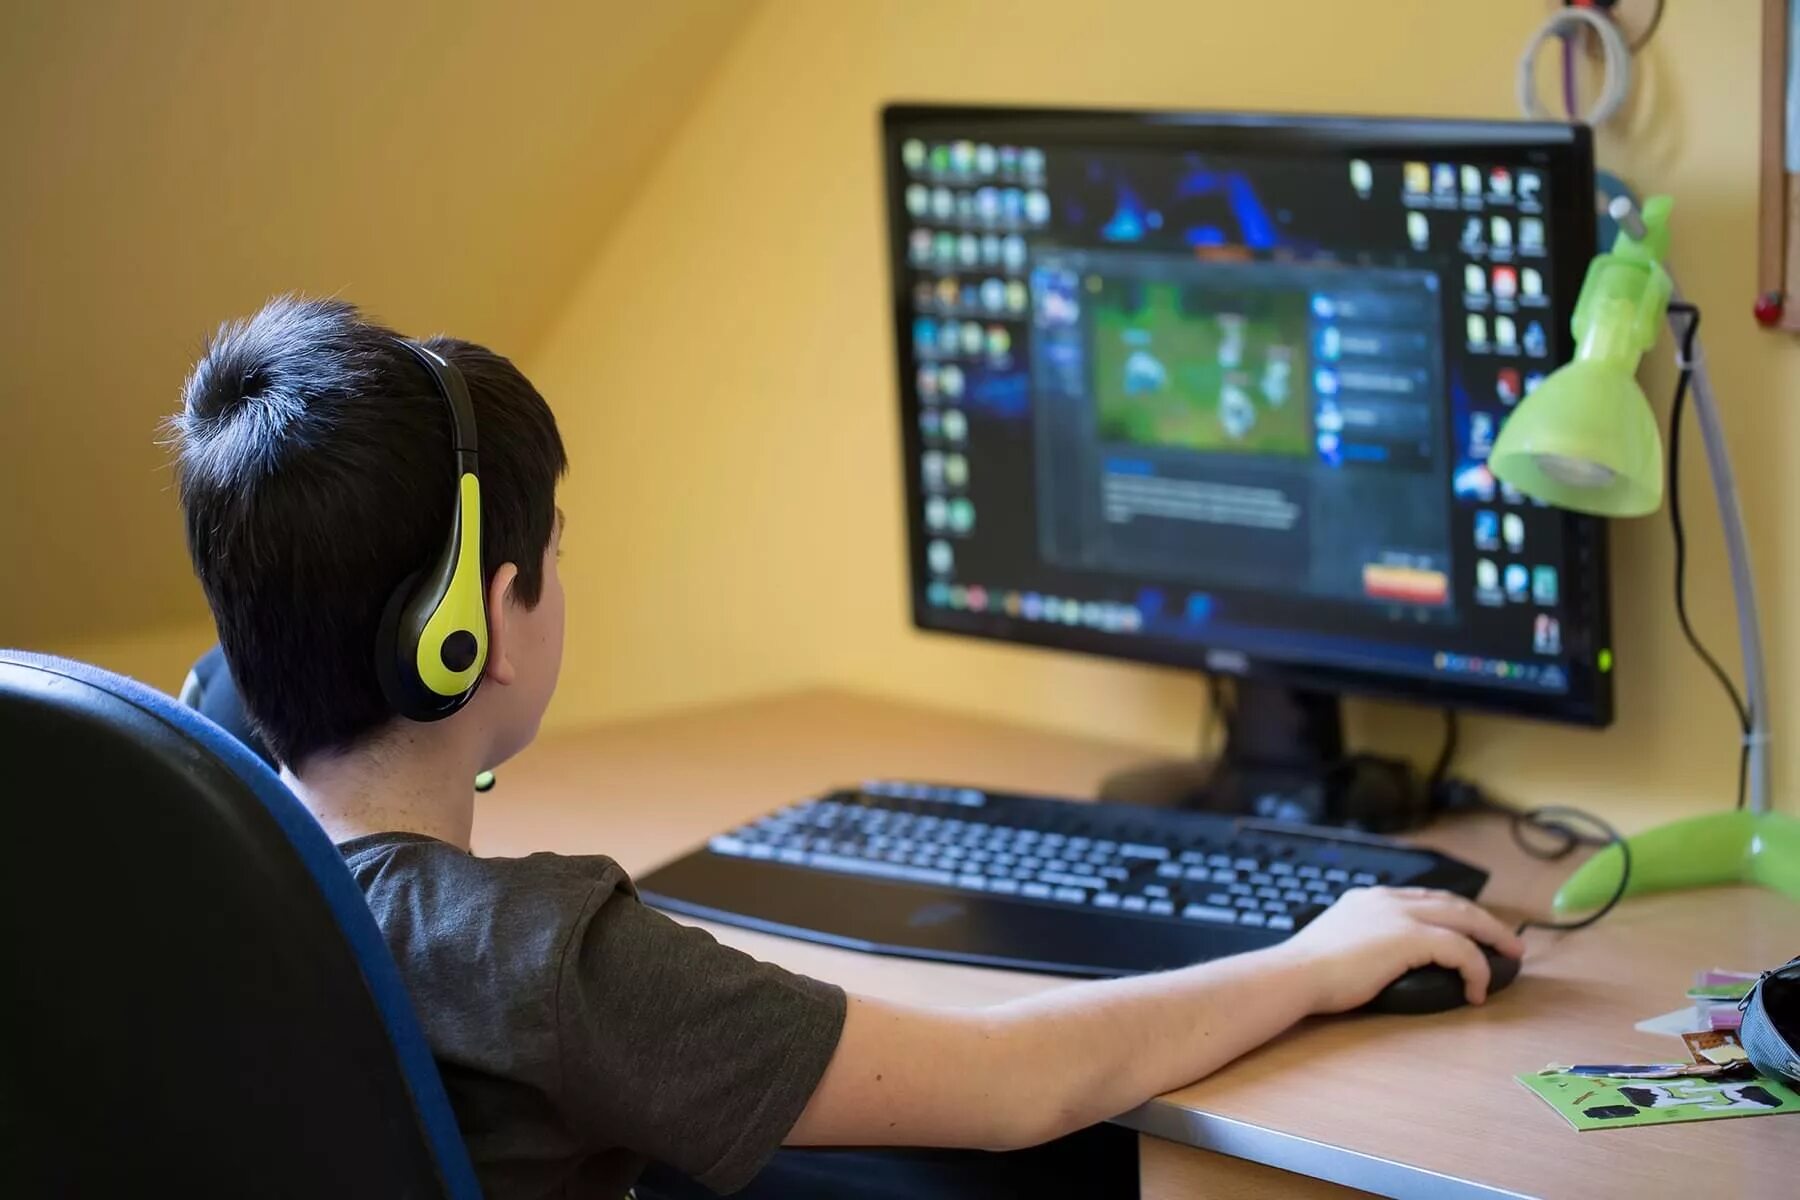 He plays computer games. Мальчик играющий в компьютерную игру. Подросток играющий в компьютер. Подросток играет в компьютерные игры. Парень играющий в компьютер.